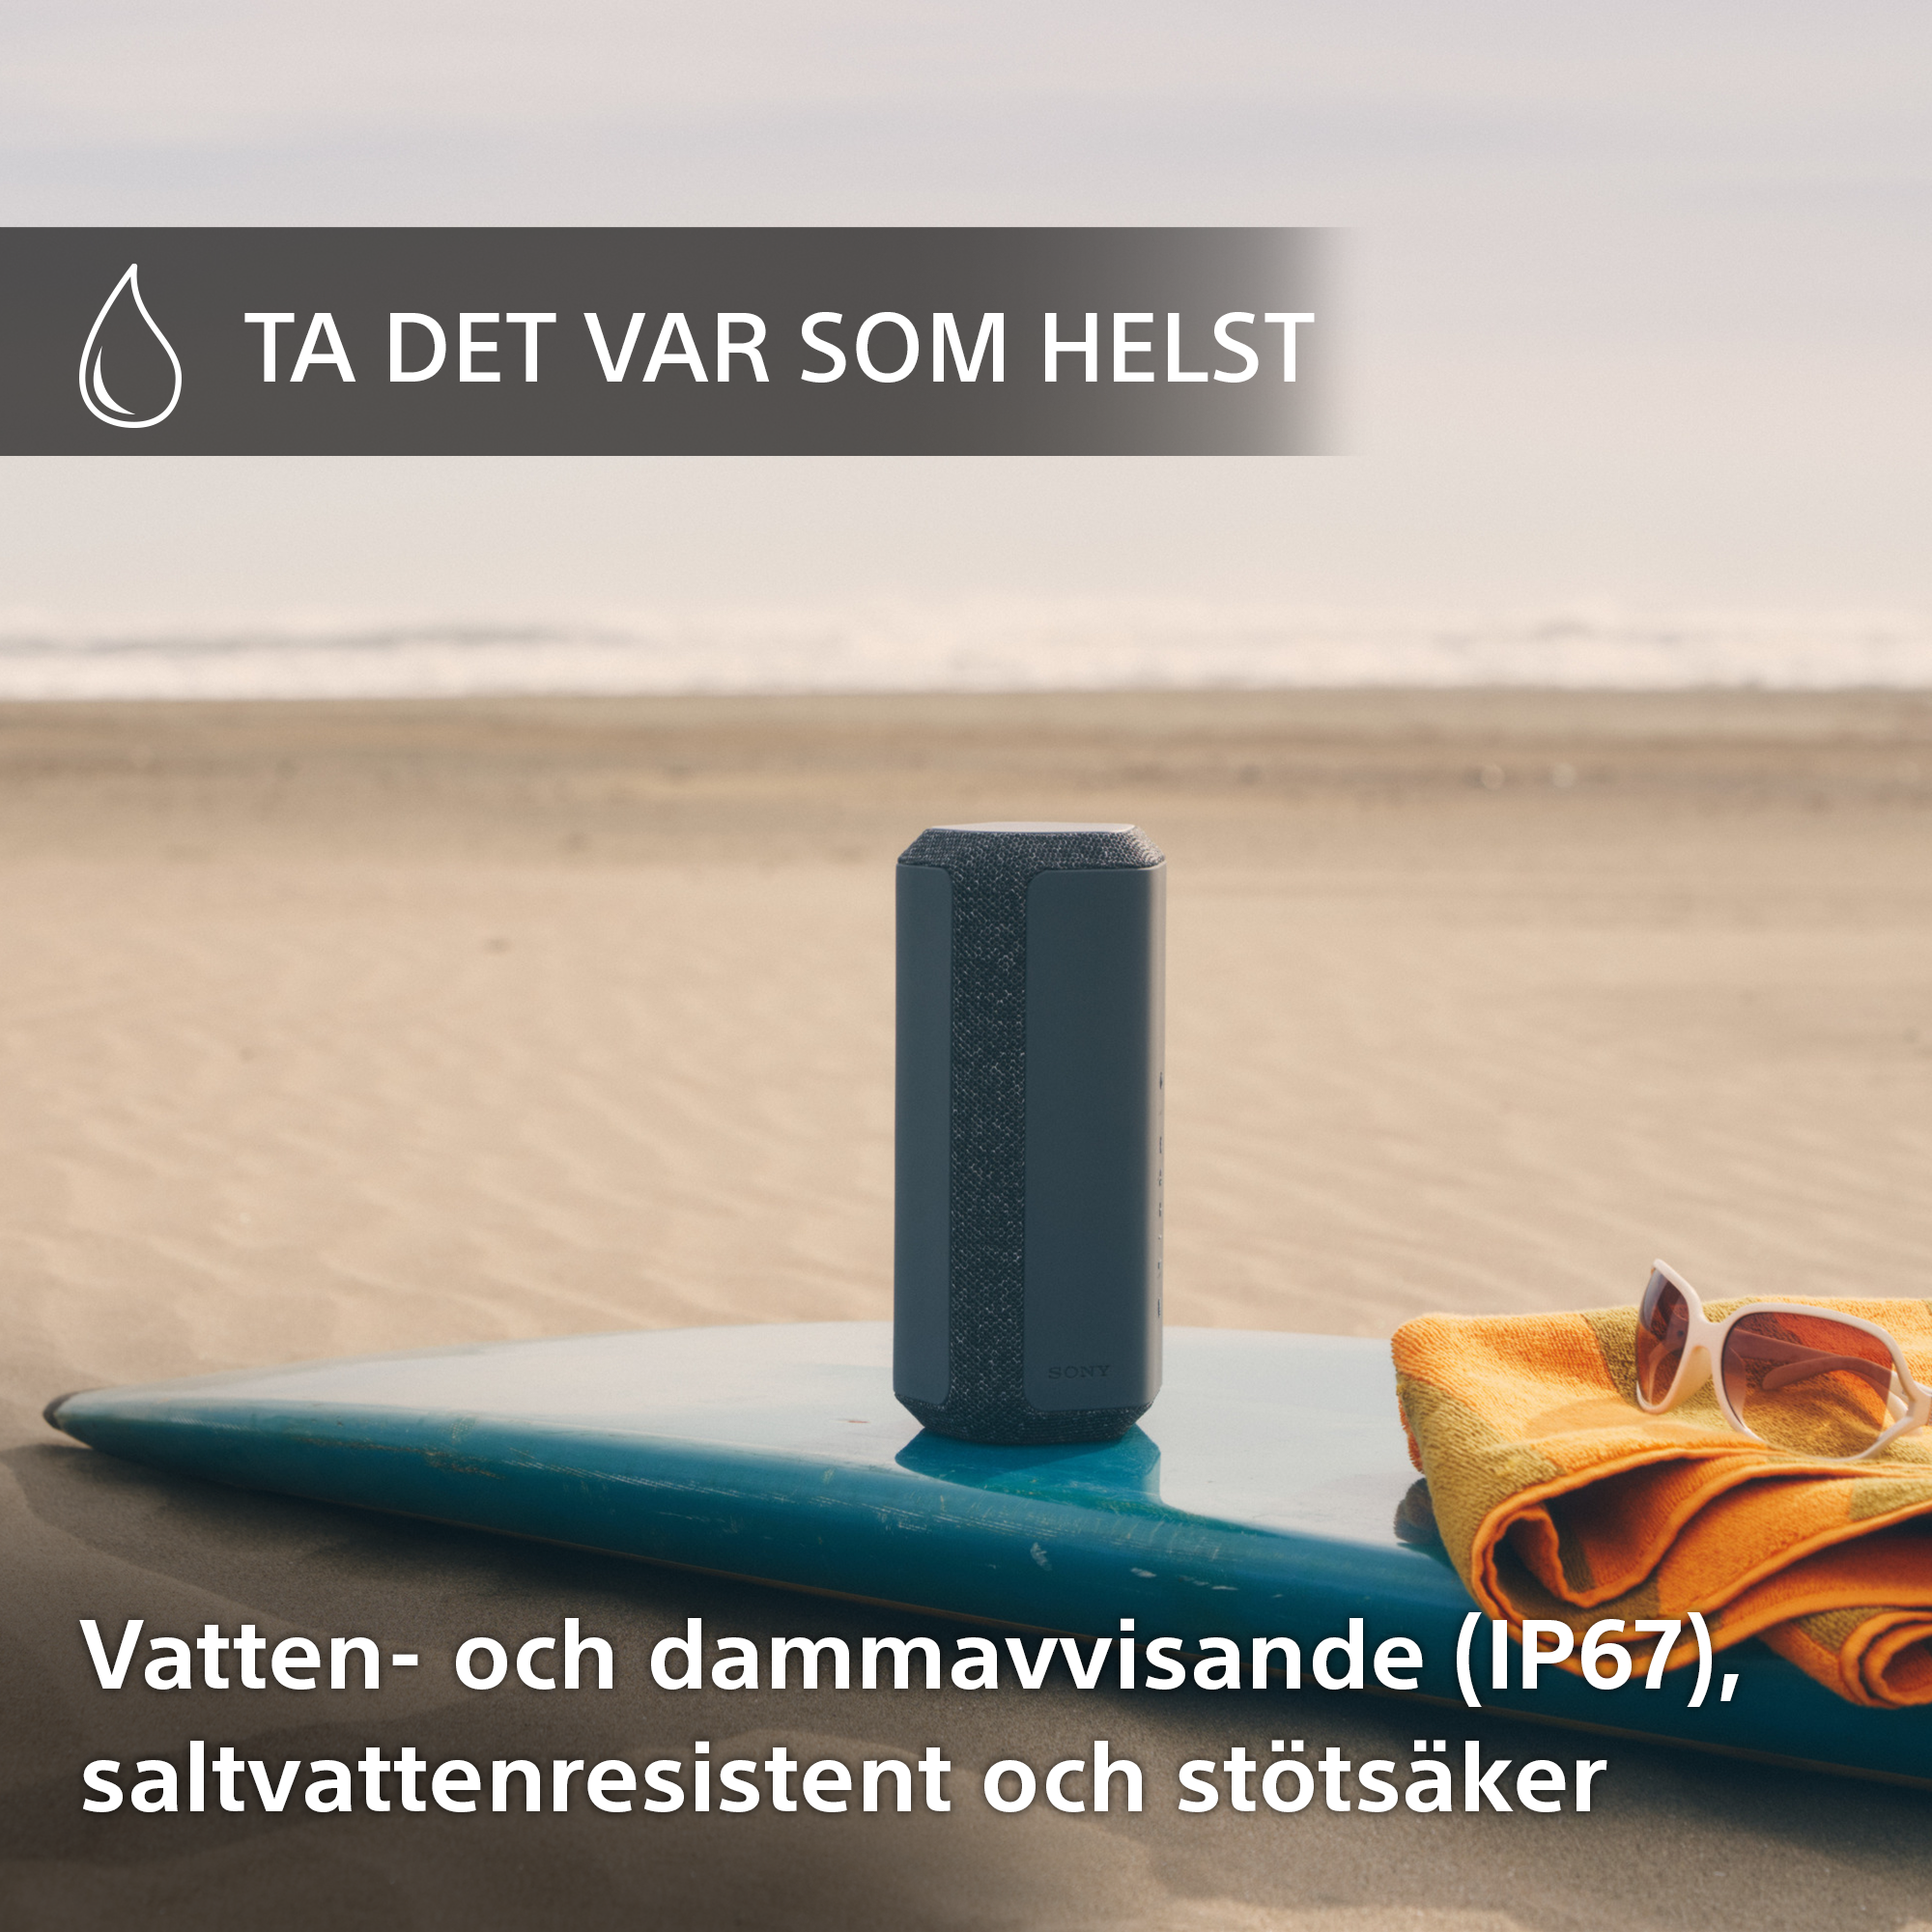 Sonyhögtalare med handduk och solglasögon bredvid på en surfingbräda på en strand och svensk text om IP